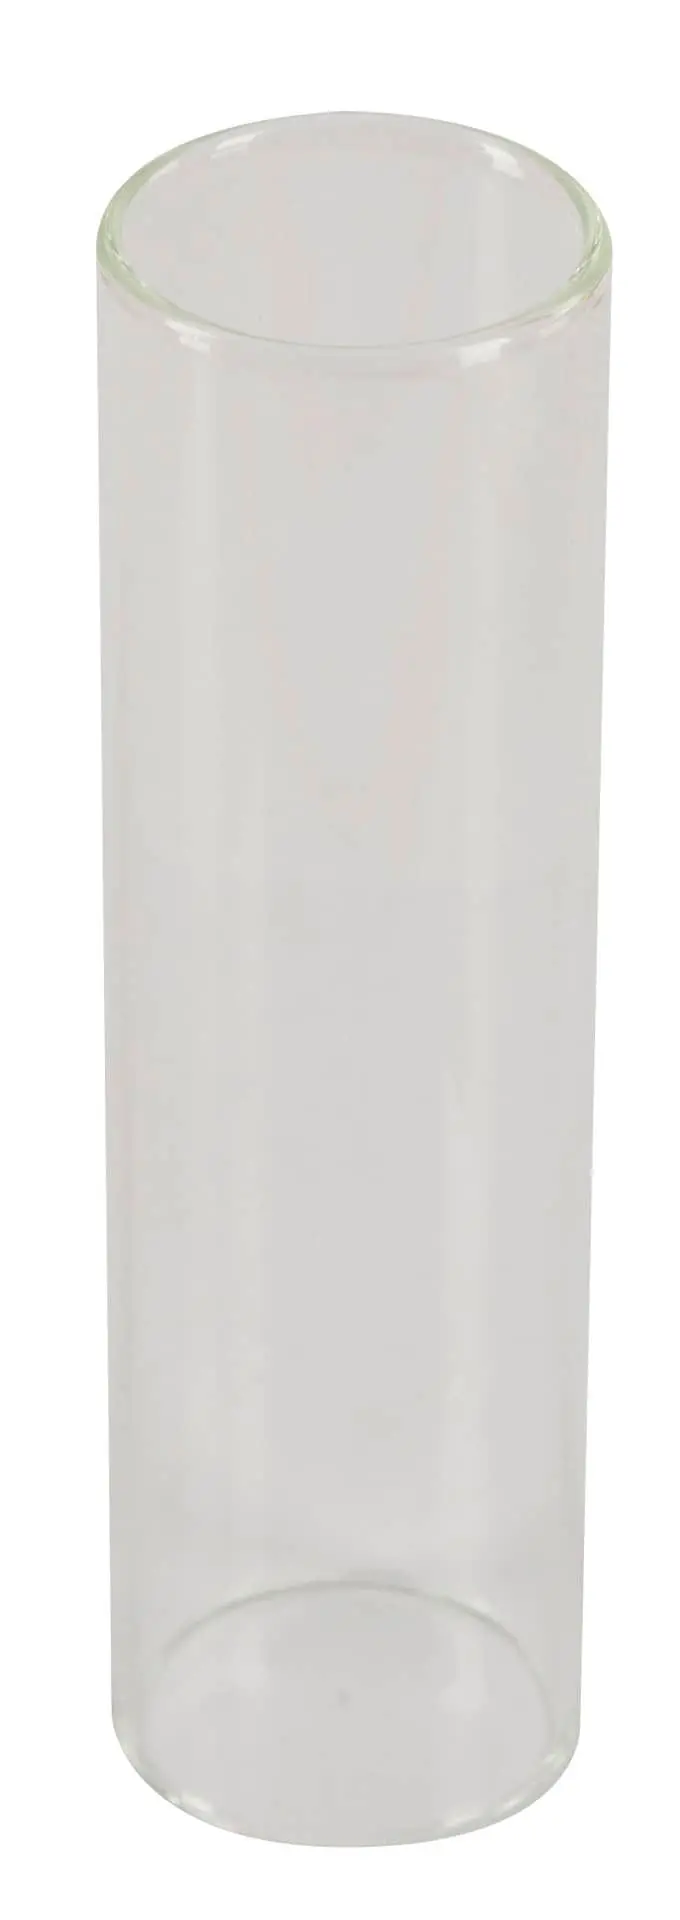 Glaszylinder für Roux-Spritze ungraduiert 30 ml